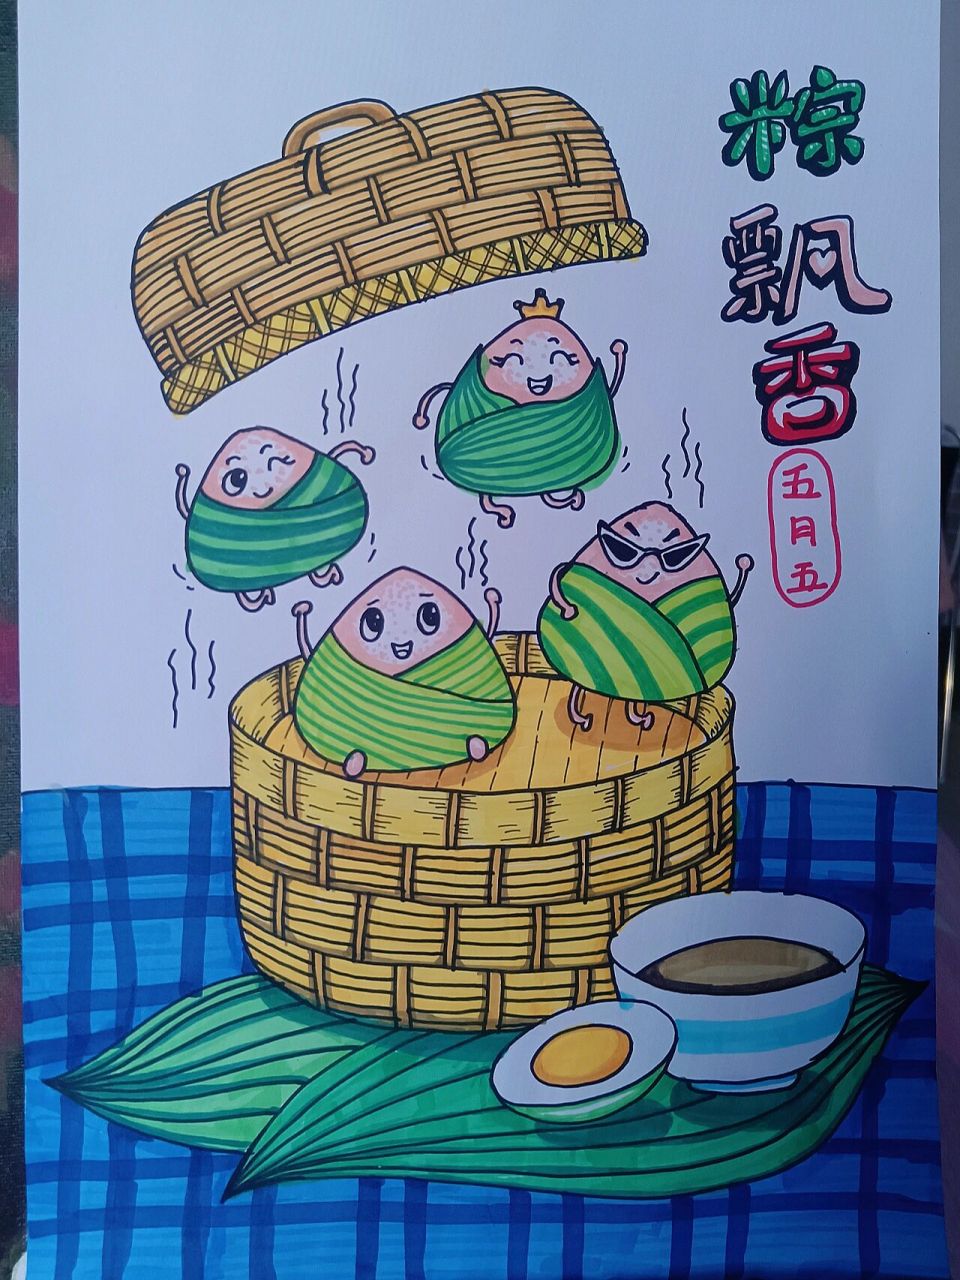 儿童画,端午节吃粽子,可爱的小粽子端午节快乐!